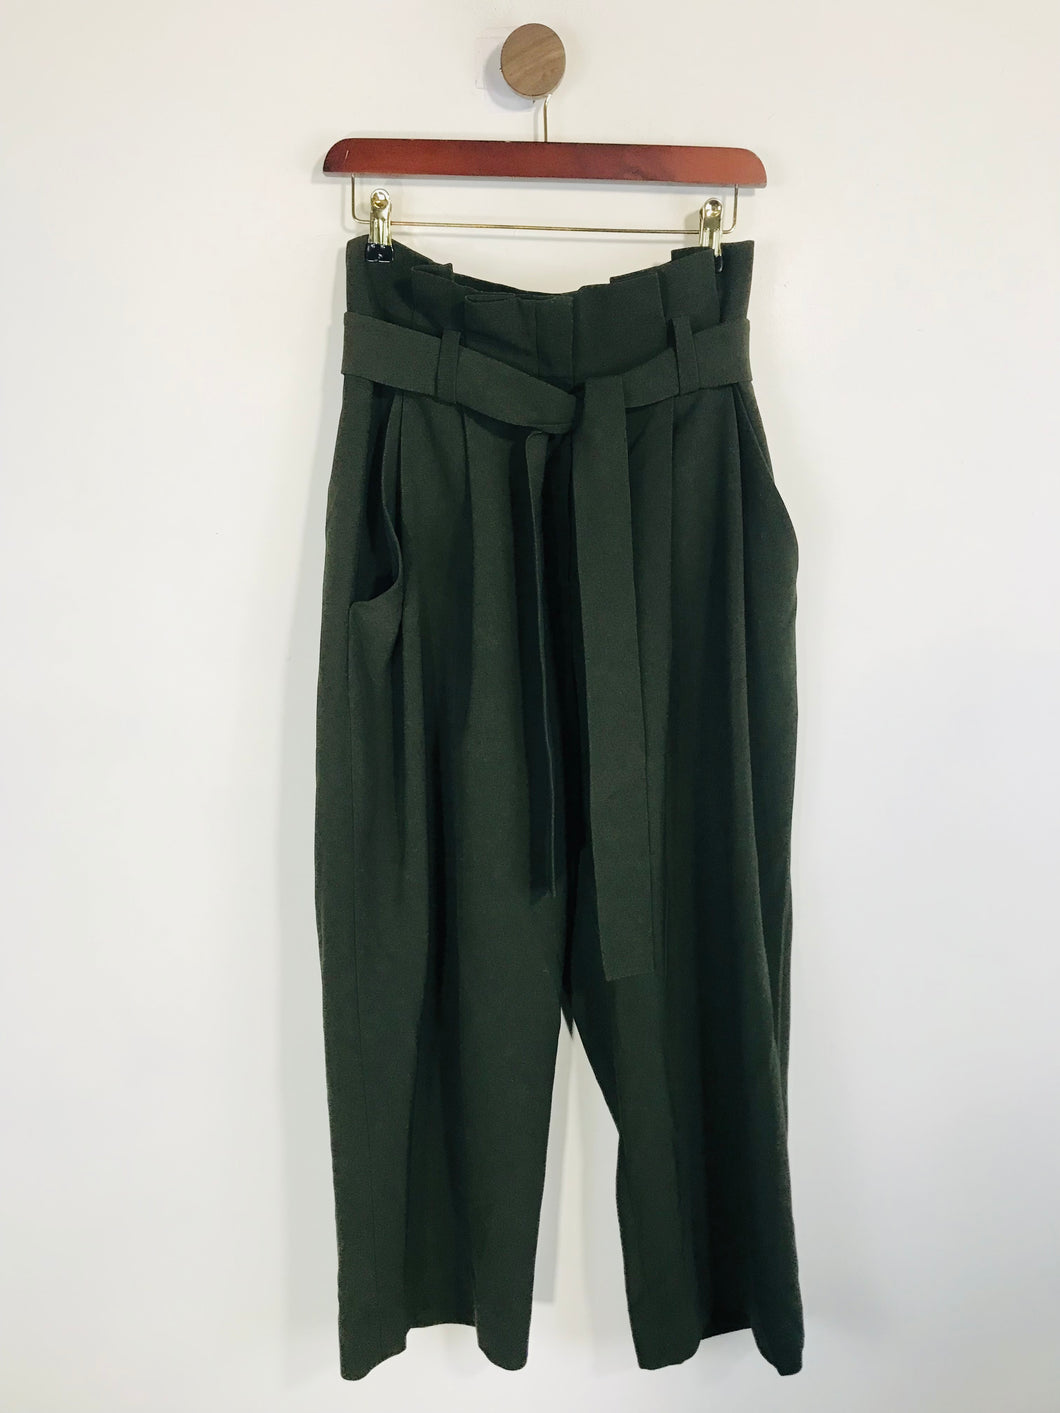 Cos Women's High Waist Paper Bag Waist Culottes Trousers | EU36 UK8 | Green